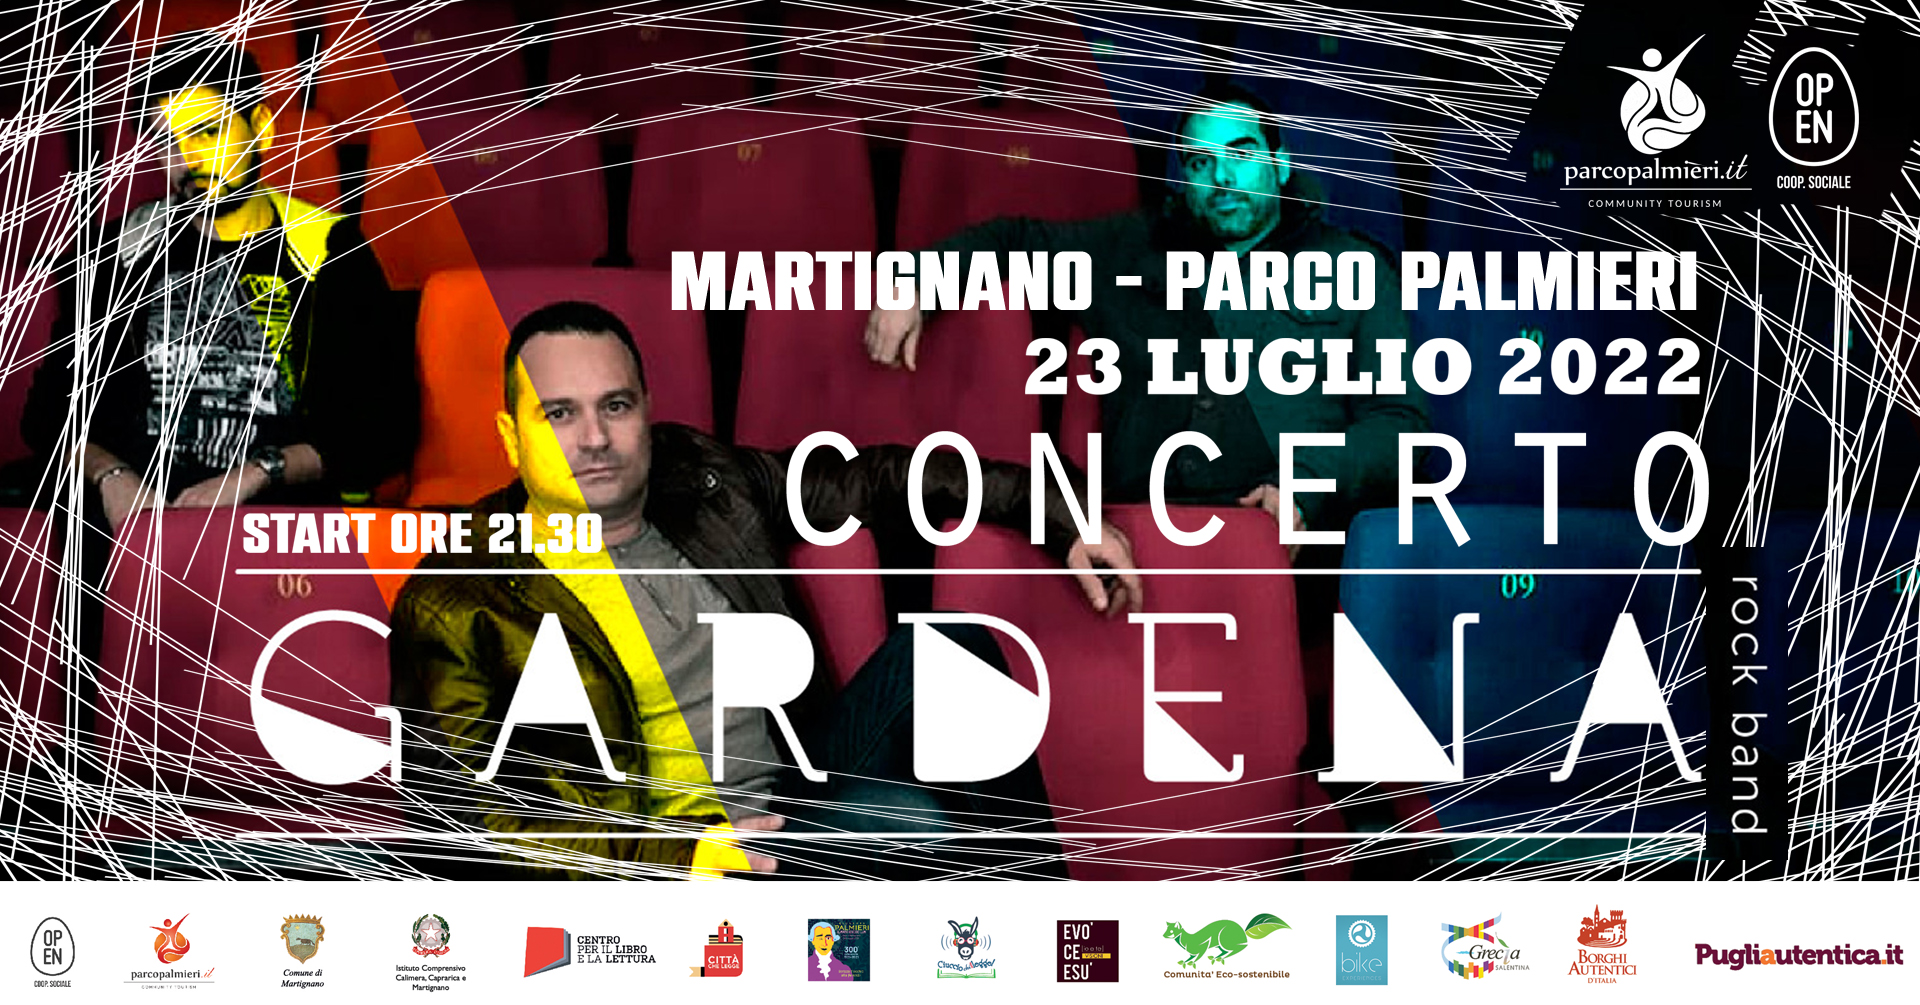 Martignano, Parco Palmieri: concerto della rock band Gardena